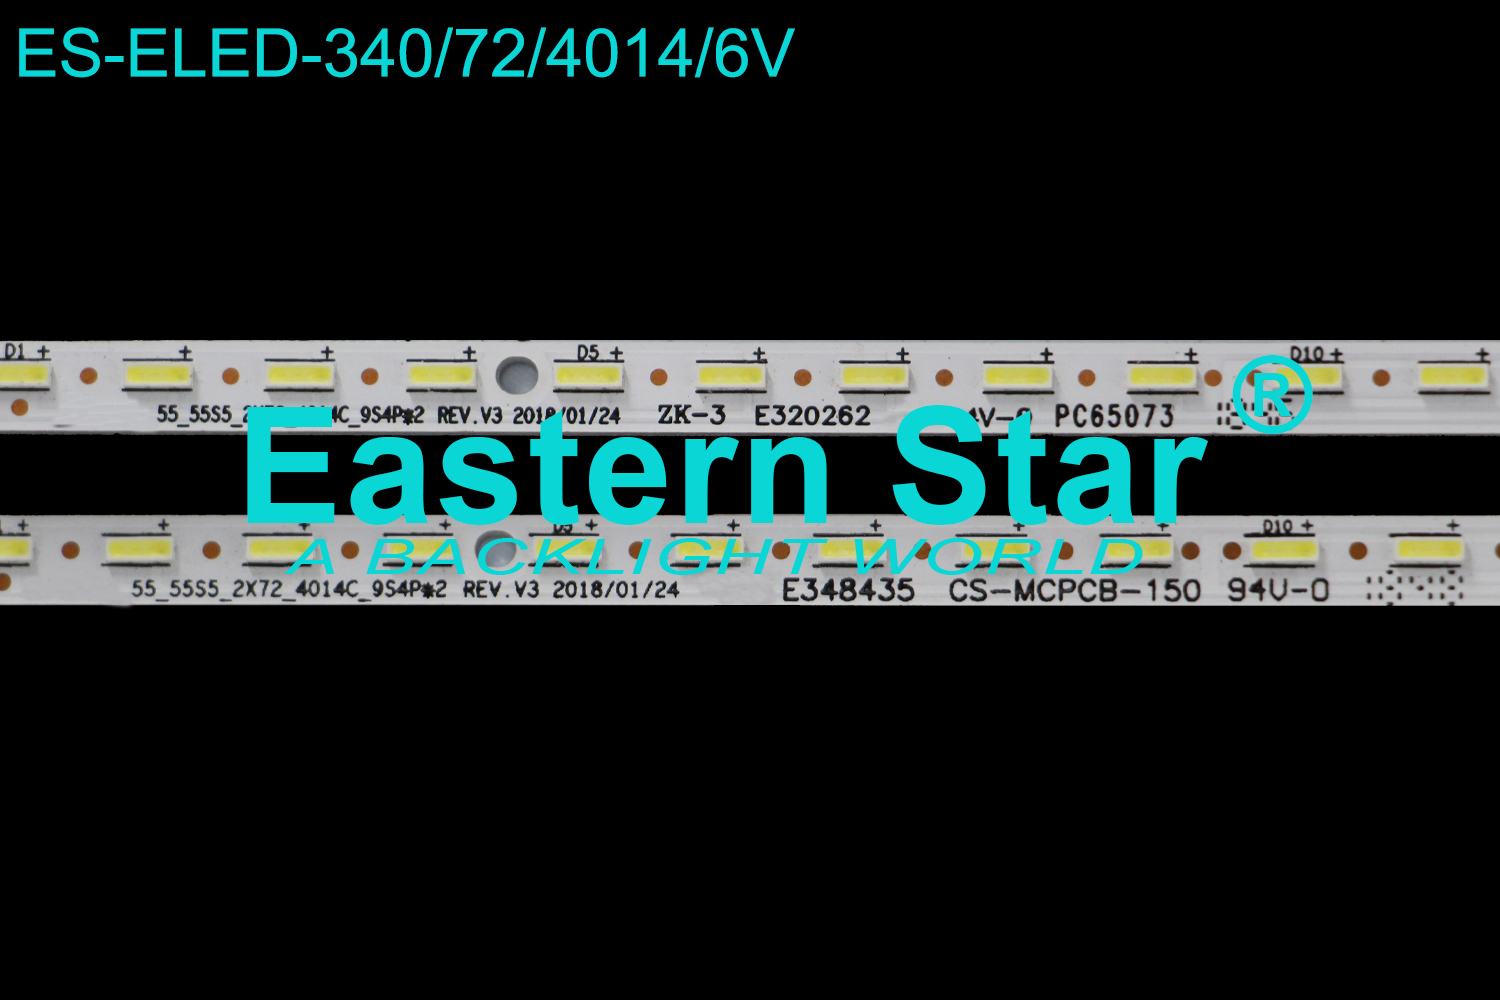 ES-ELED-340 ELED/EDGE TV backlight use for 55'' Hisense 55H9908 55H9E HISENSE 55 55S5 2X72 4014C 9S4P 2 REV.V3 CS-MCPCB-150 LED STRIPS(2)